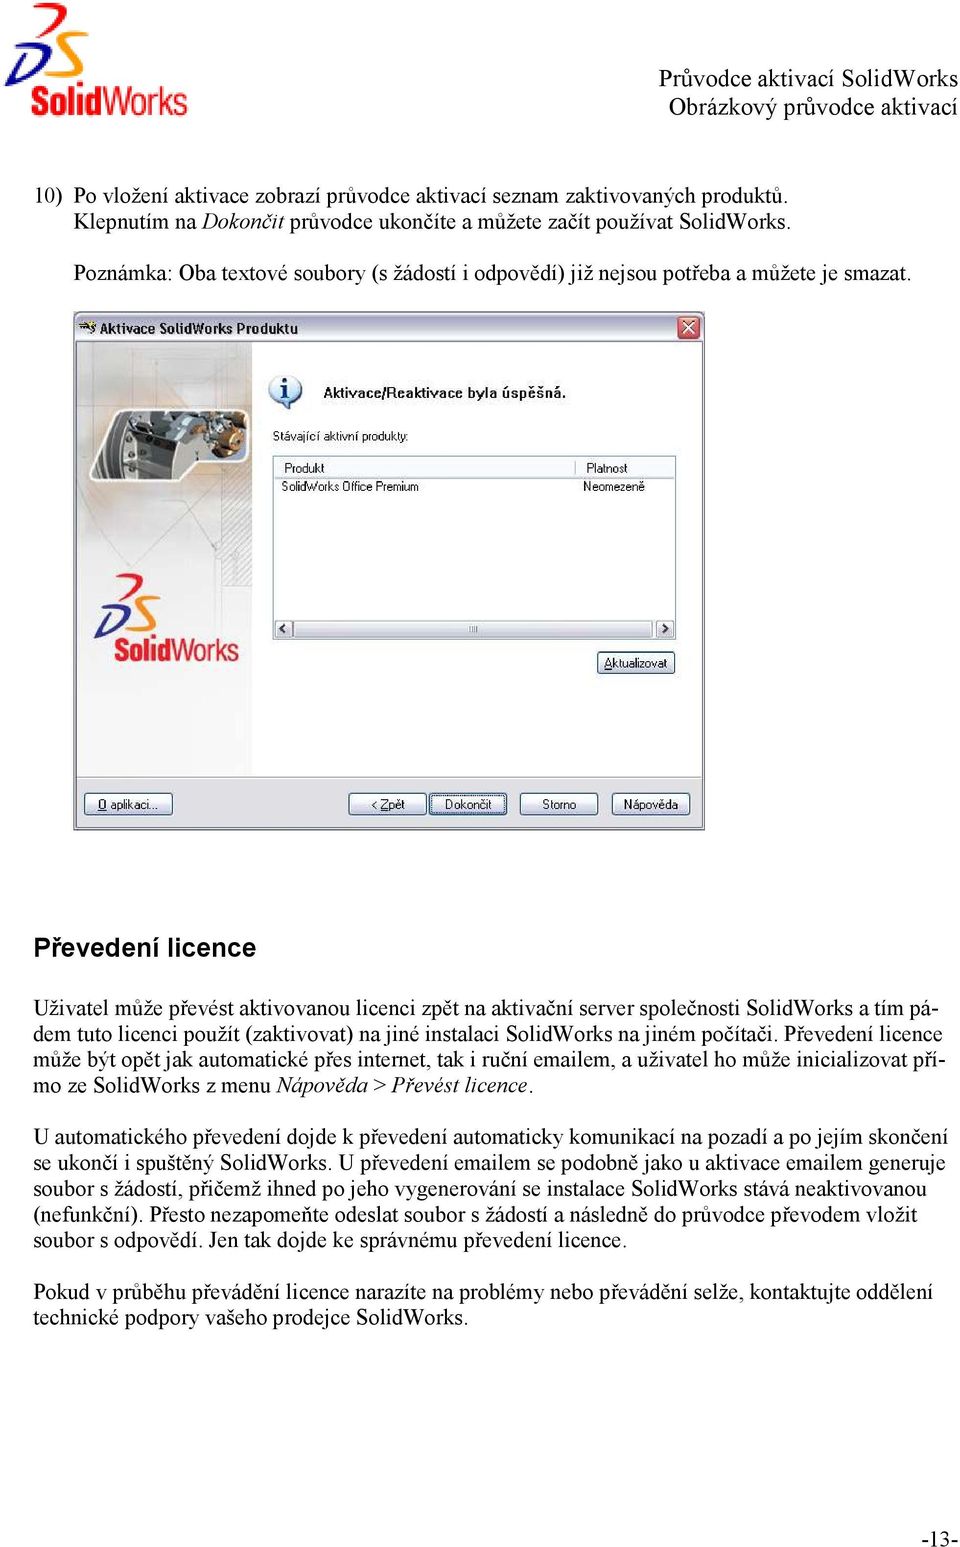 Převedení licence Uživatel může převést aktivovanou licenci zpět na aktivační server společnosti SolidWorks a tím pádem tuto licenci použít (zaktivovat) na jiné instalaci SolidWorks na jiném počítači.